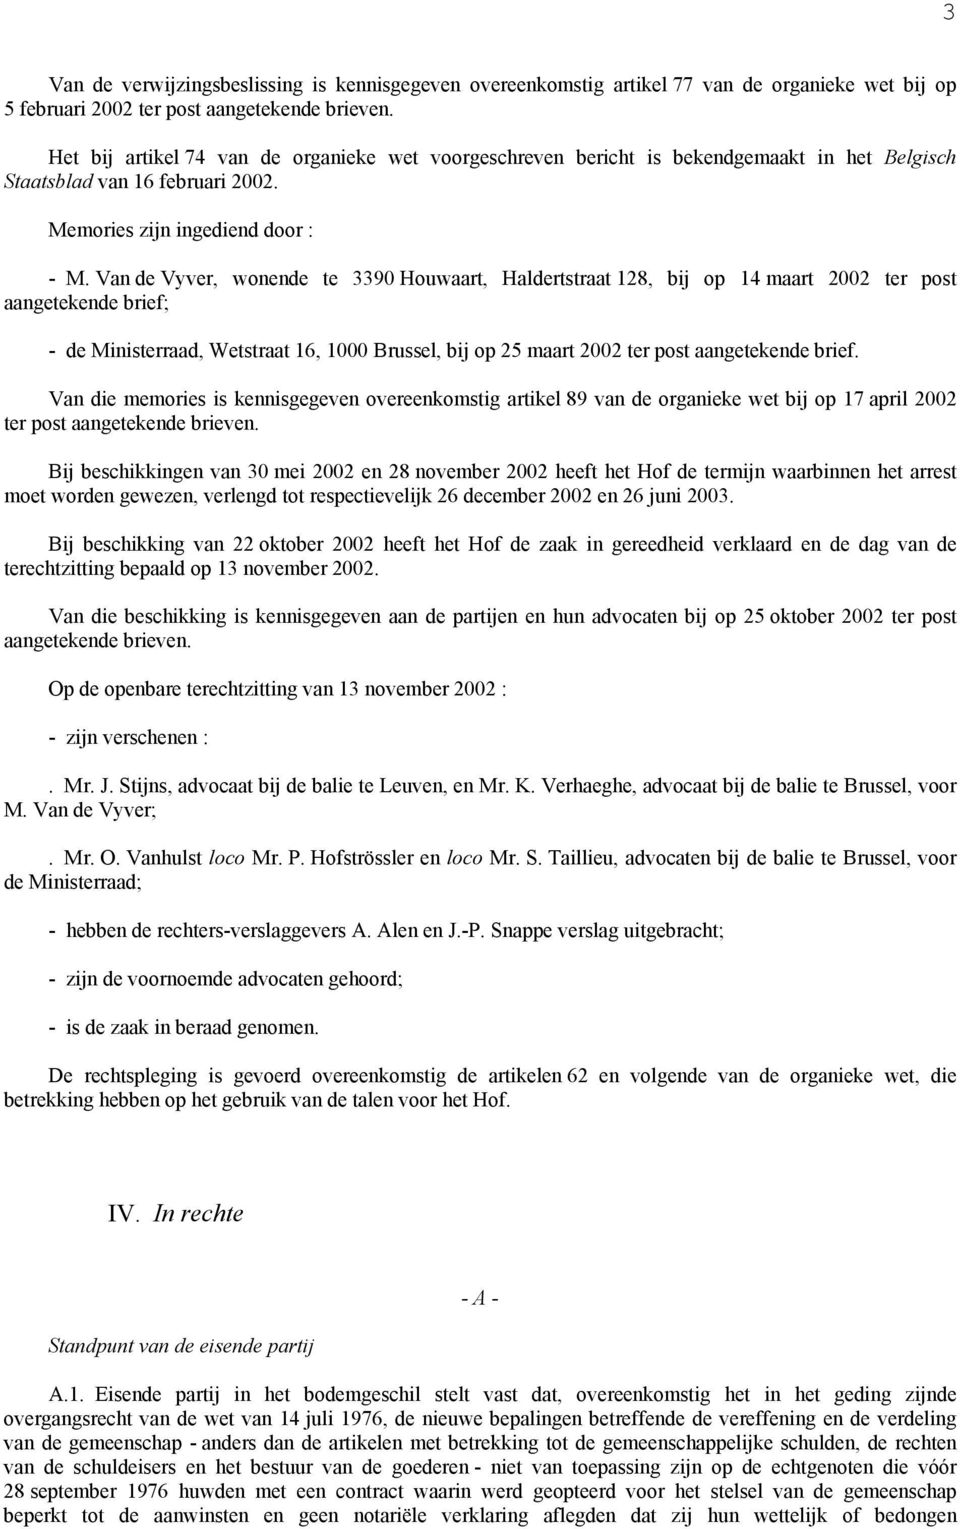 Van de Vyver, wonende te 3390 Houwaart, Haldertstraat 128, bij op 14 maart 2002 ter post aangetekende brief; - de Ministerraad, Wetstraat 16, 1000 Brussel, bij op 25 maart 2002 ter post aangetekende